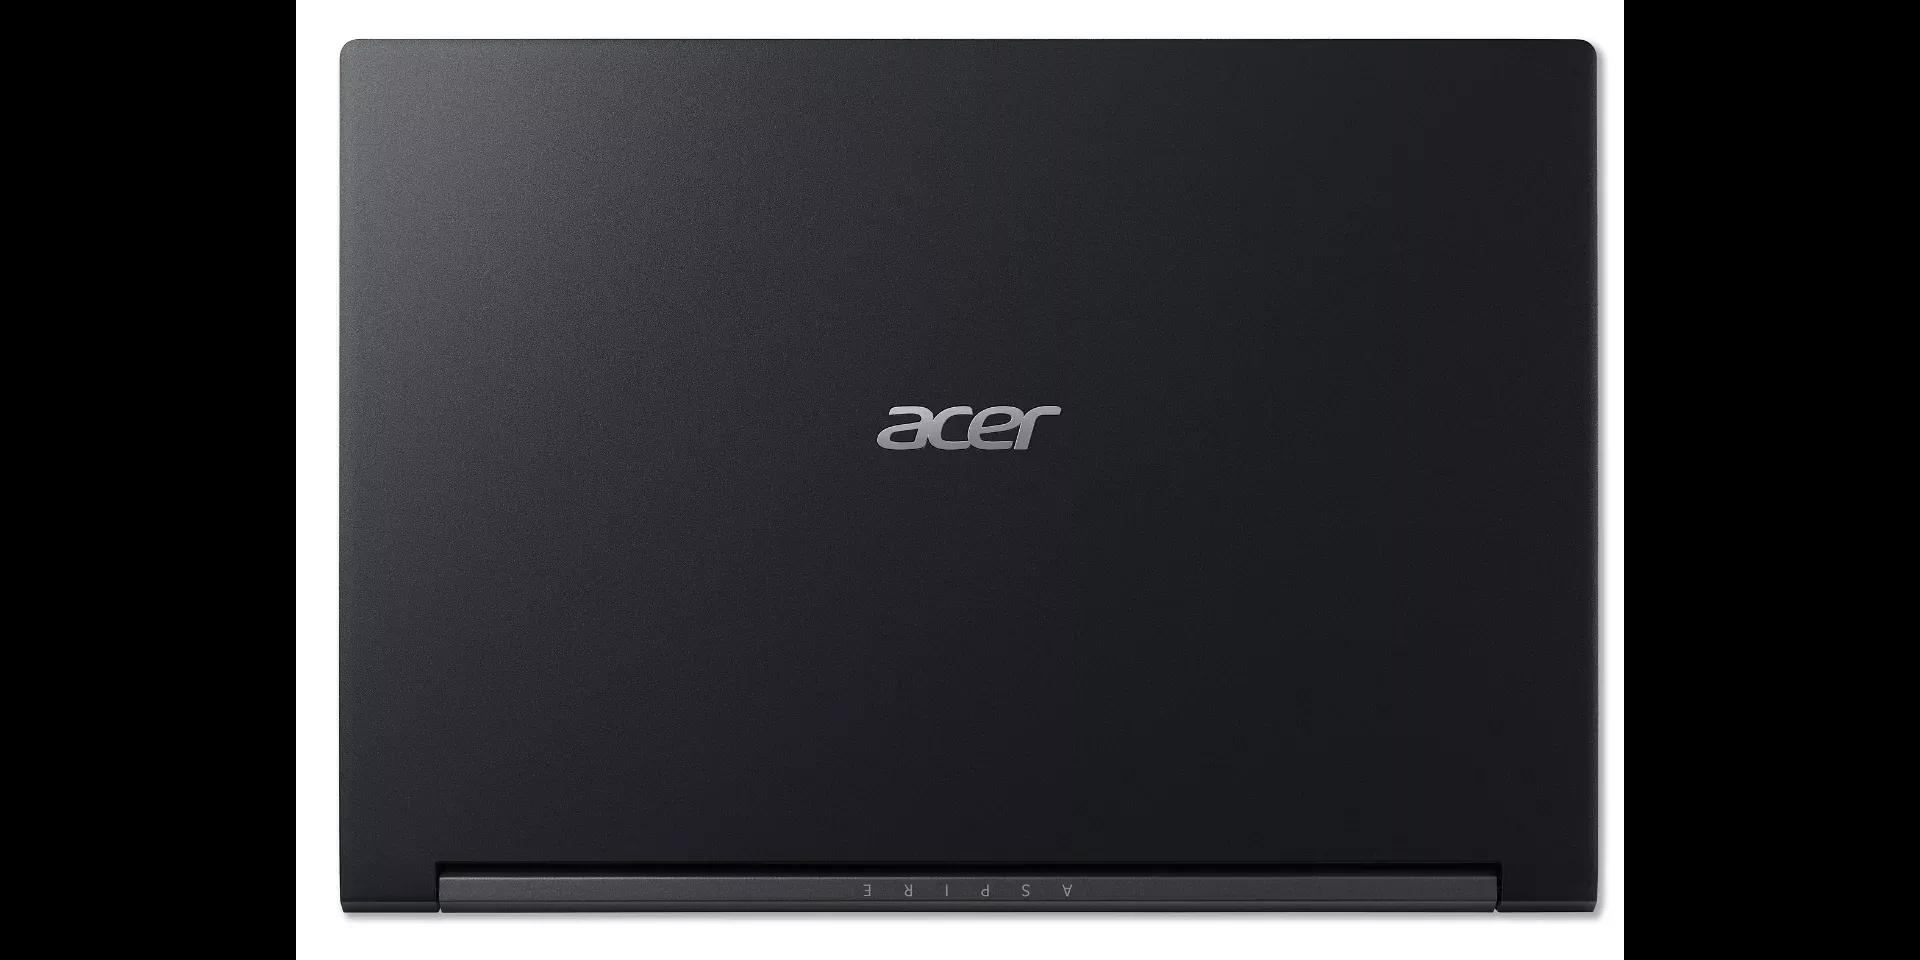 Acer Aspire 7 A715 2022 Ryzen 5 5500U | 16GB RAM | 512GB SSD | GeForce GTX 1650 4G-GDDR6 | 15.6" FHD Display | Backlight Keyboard